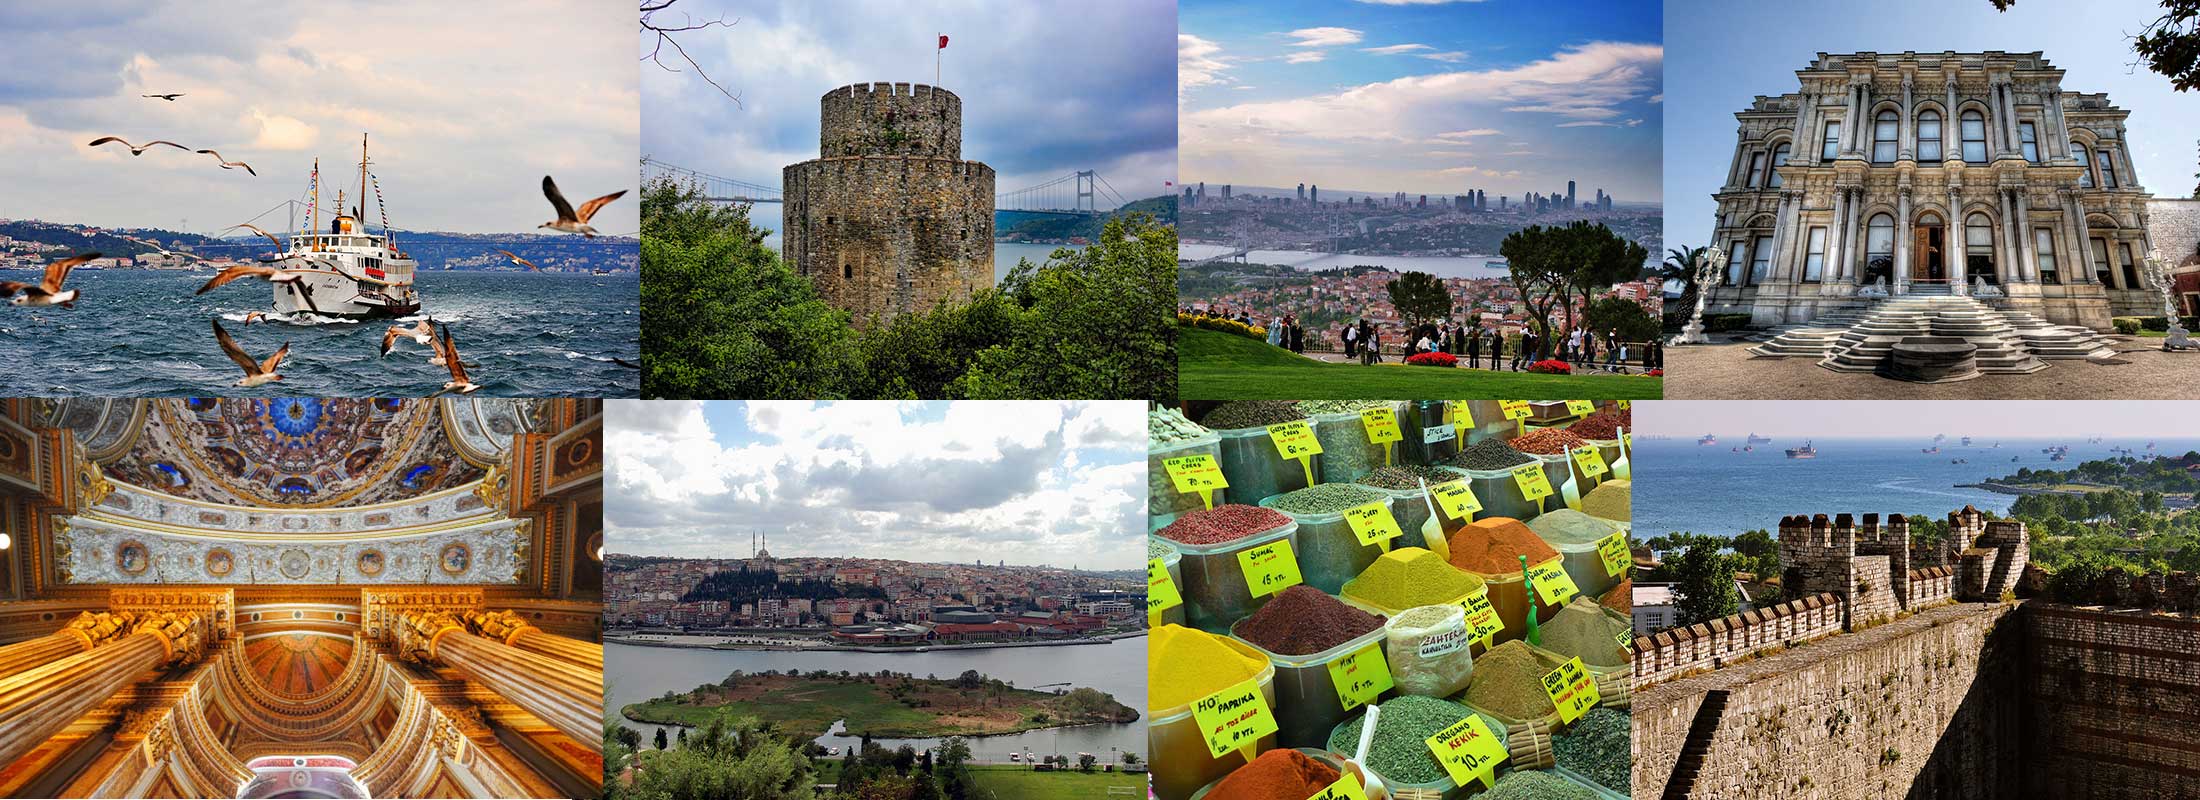 bosphorus-cruise-tours-istanbul